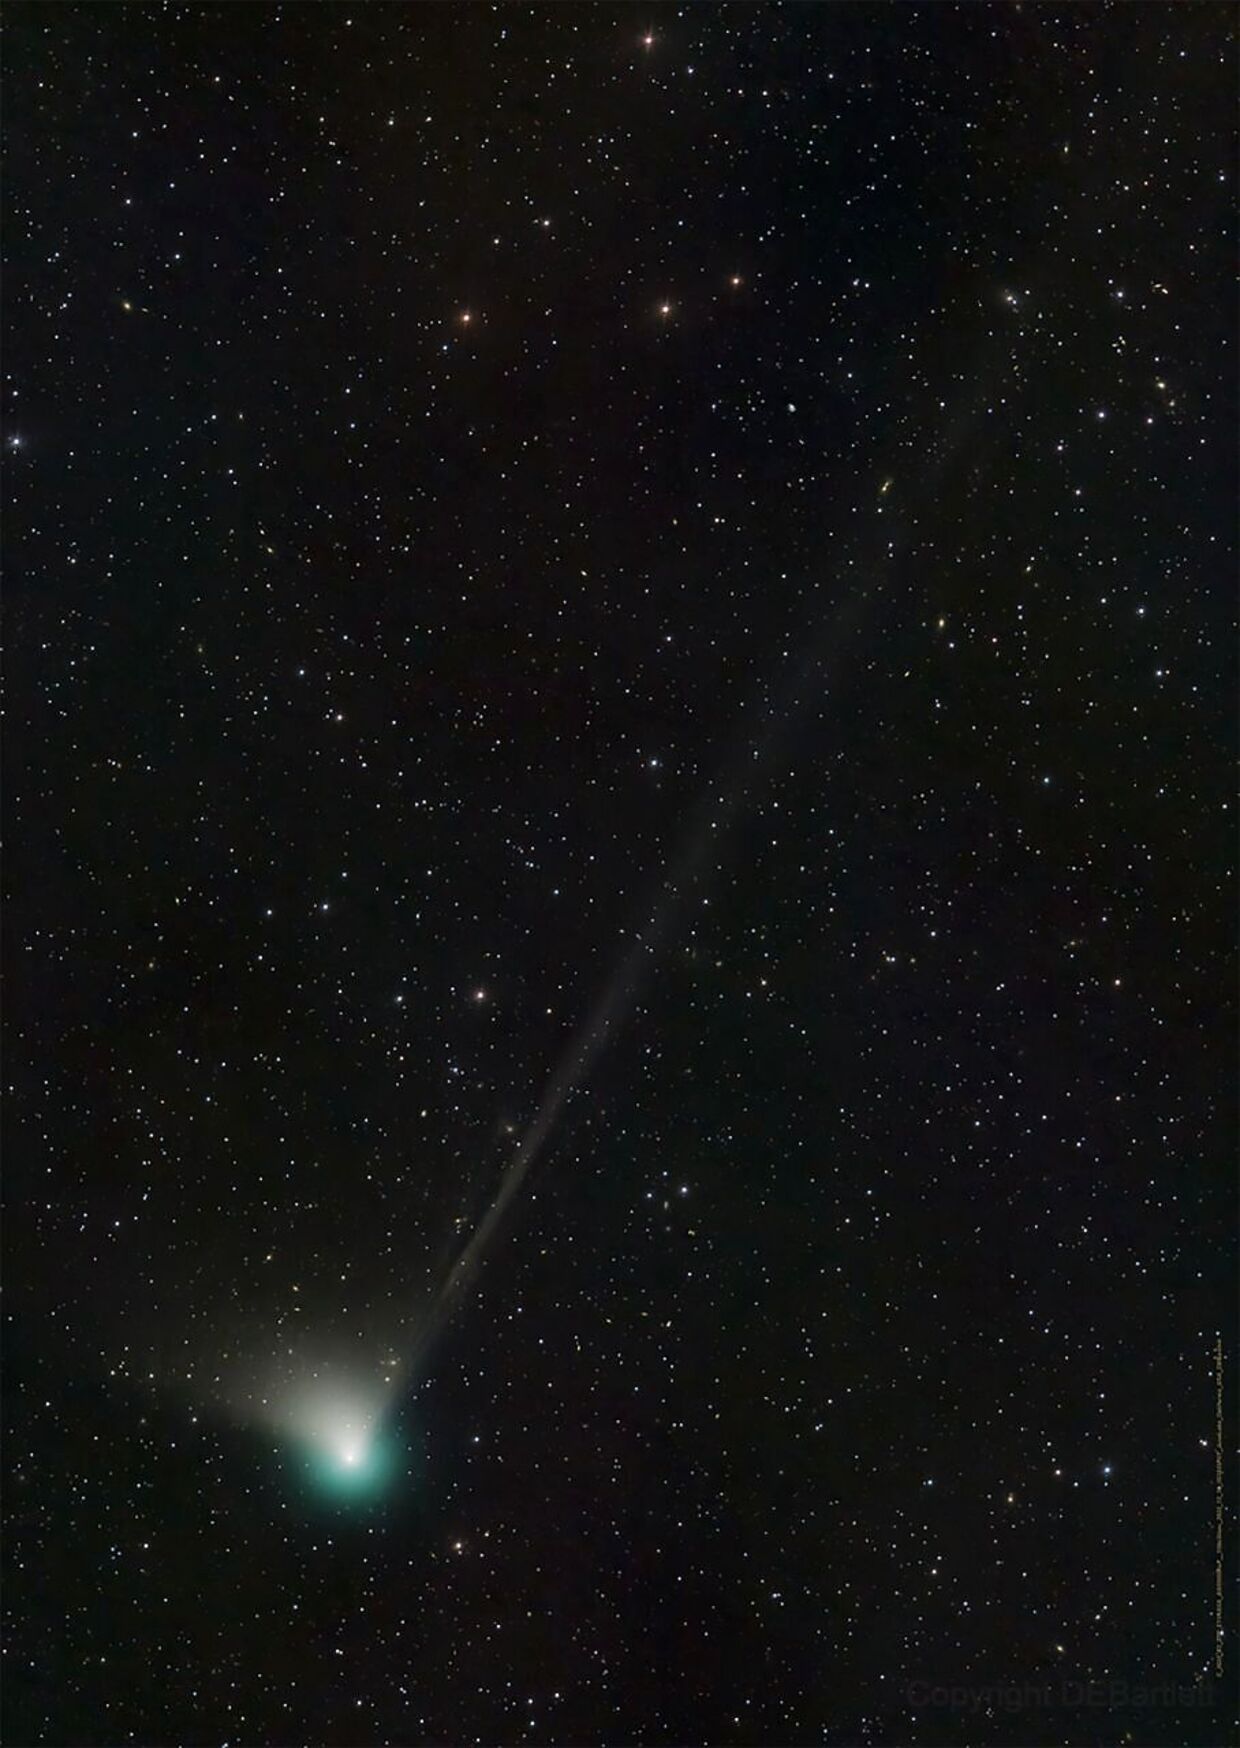 Kometen C/2022 E3 (ZTF) kan muligvis ses som en grønlig klat på himlen med det blotte øje, når den kommer tættest på Jorden til feburar.